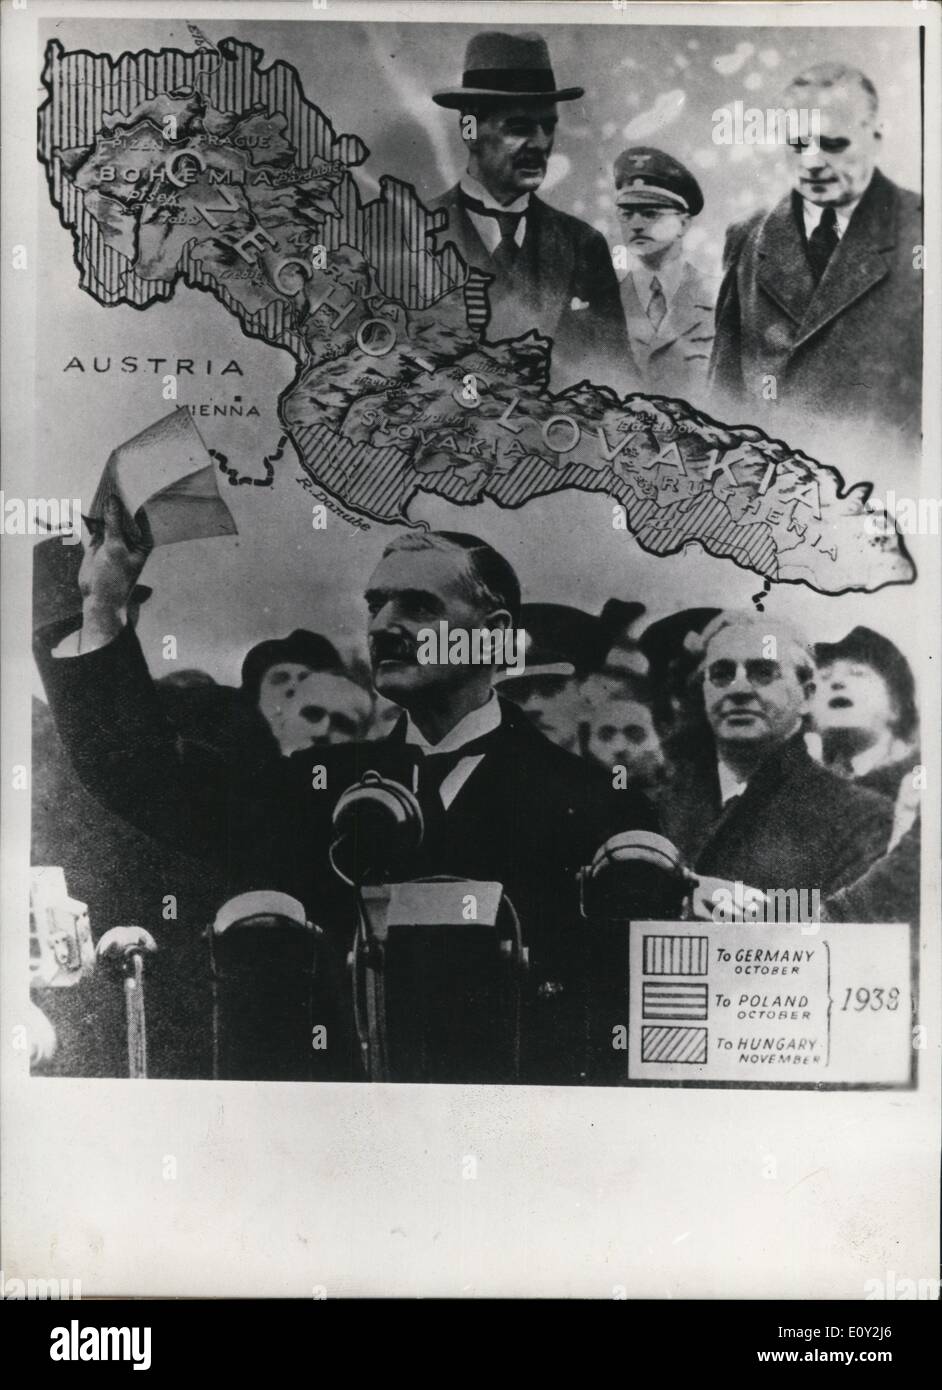 Sept. 09, wurde 1938 ein Abkommen zwischen Hitler, Mussolini, Chamberlain und Baladier erlauben Deutschland Annexion des Sudetenlandes aus der damaligen Tschechoslowakei 1968 - geschlagen. Der Pakt wurde vorgenommen, um die Sicherung des Friedens in Europa, aber leider war es nicht von Dauer. Bild ist von einem Stockfoto